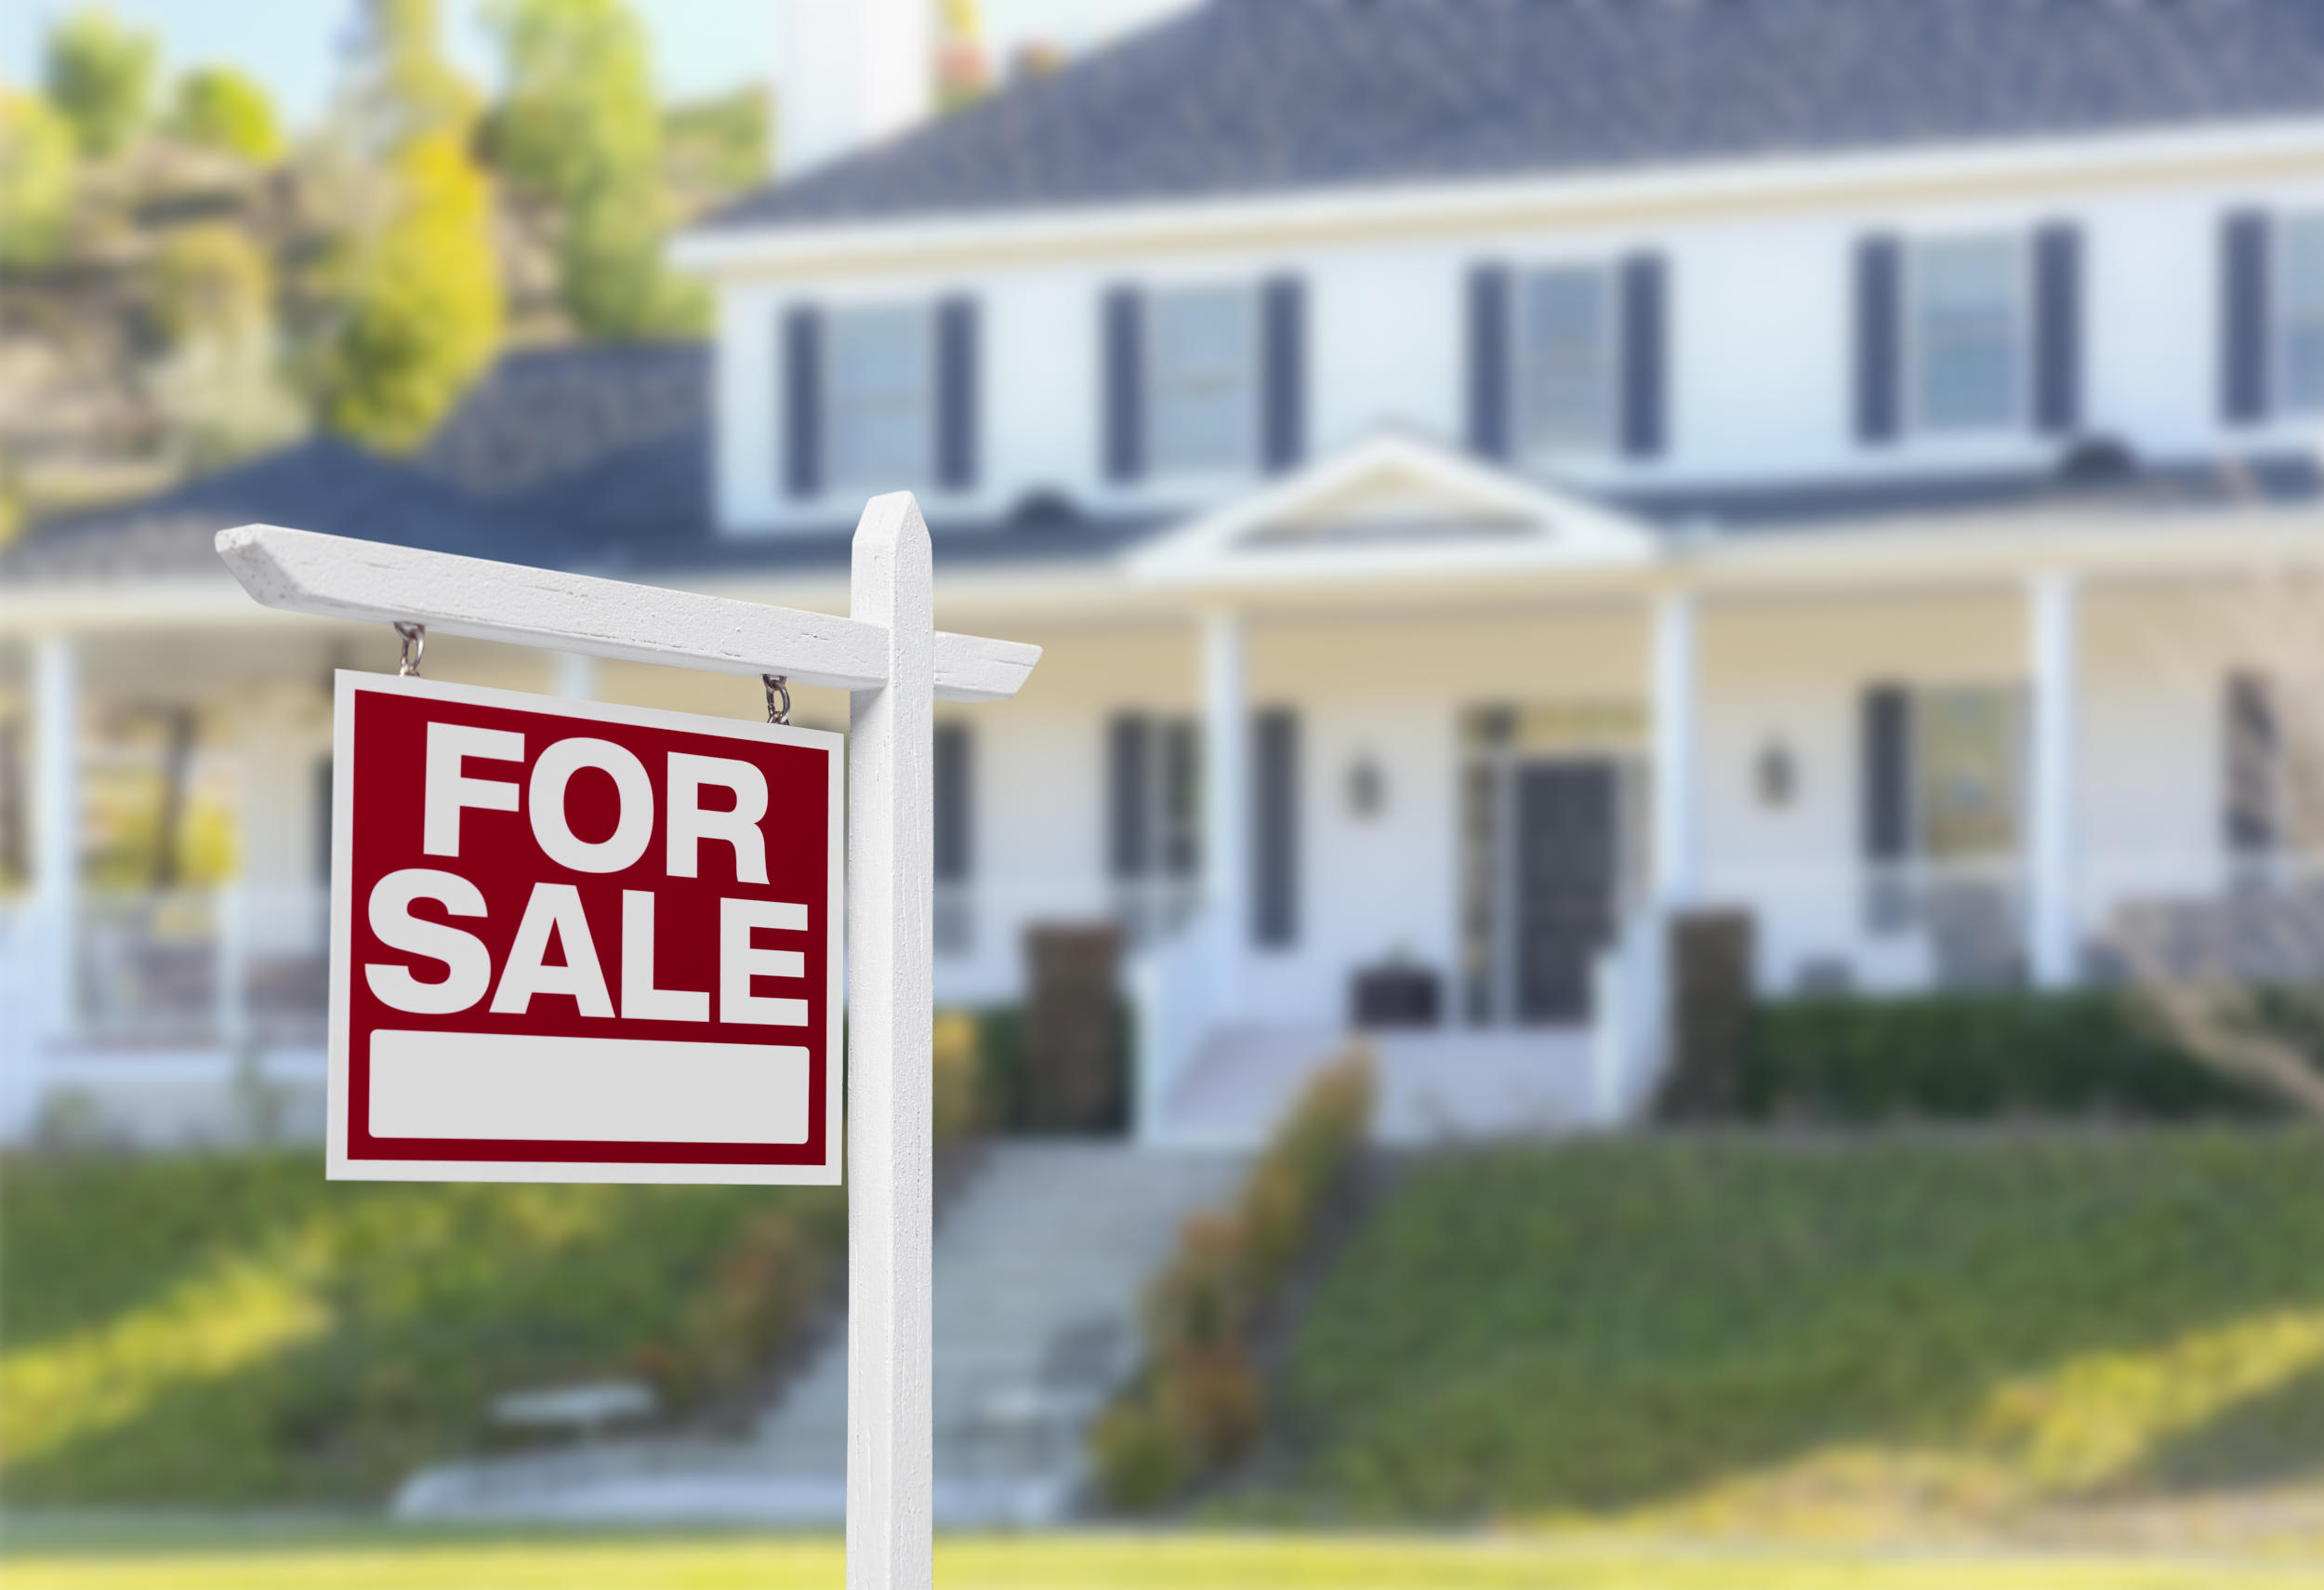 For Sale Real Estate | Doug Edwards Realtor